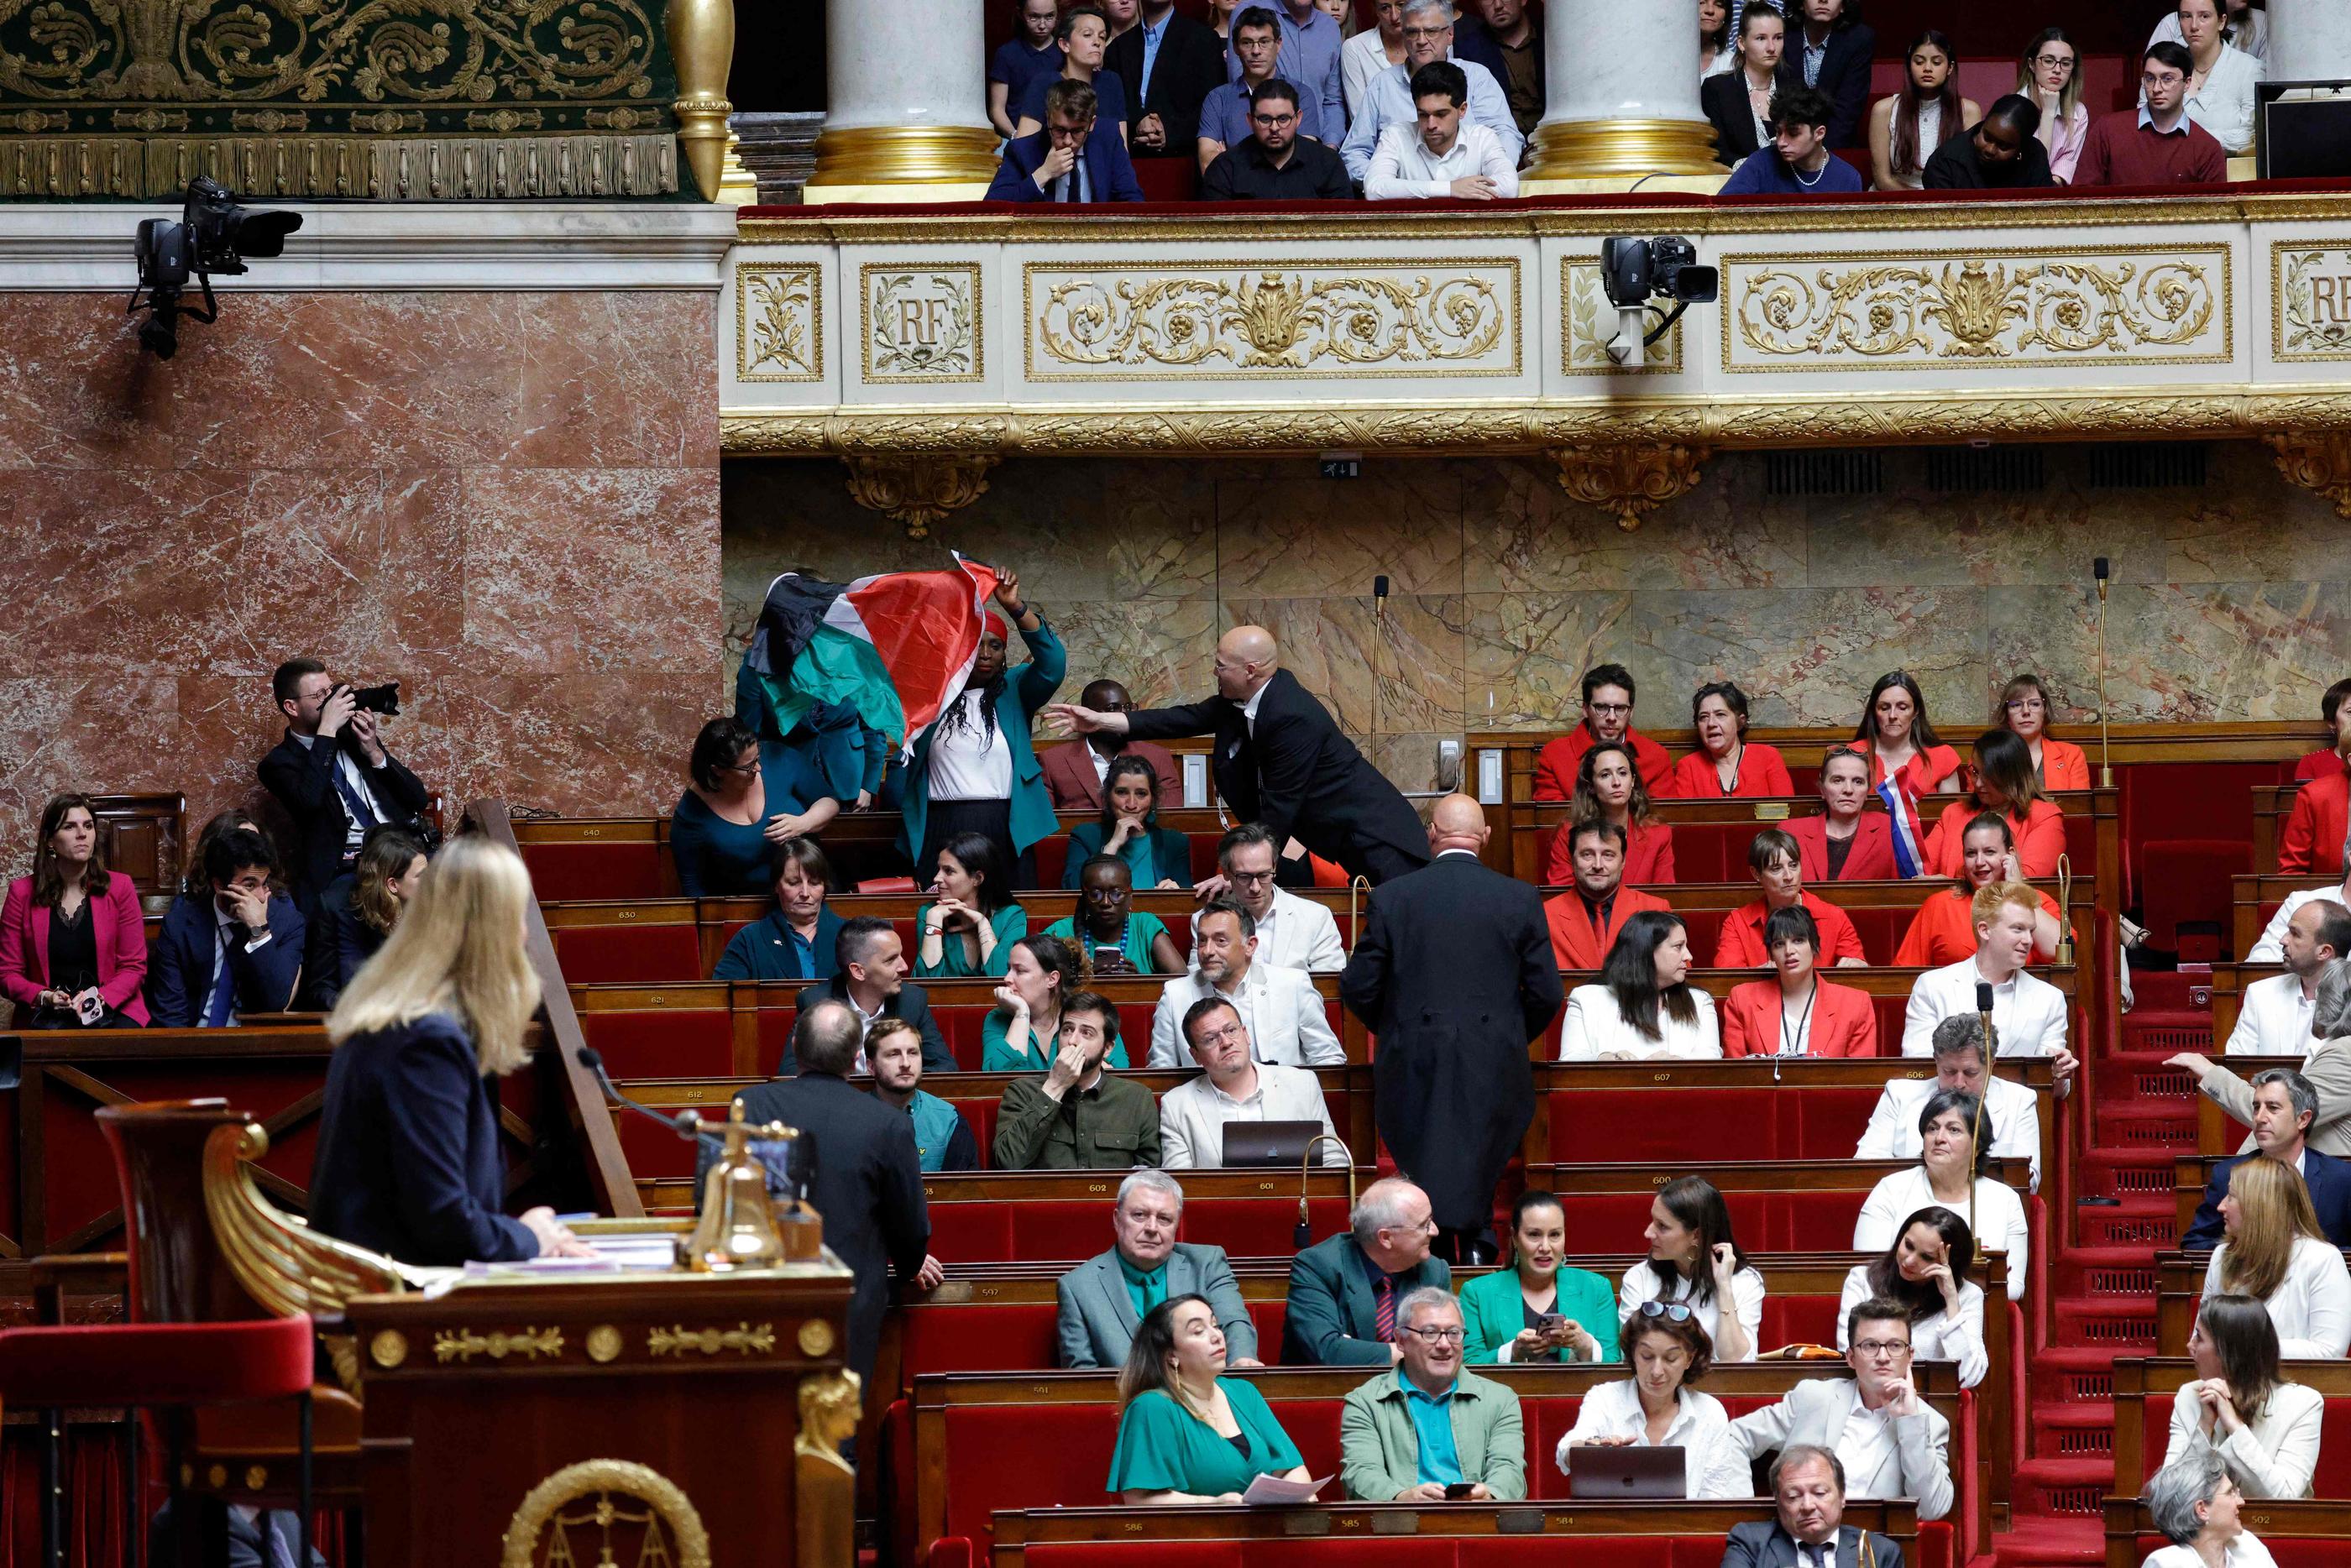 La députée LFI Rachel Kéké a brandi mardi dans l’hémicycle de l’Assemblée un drapeau palestinien. AFP/GEOFFROY VAN DER HASSELT